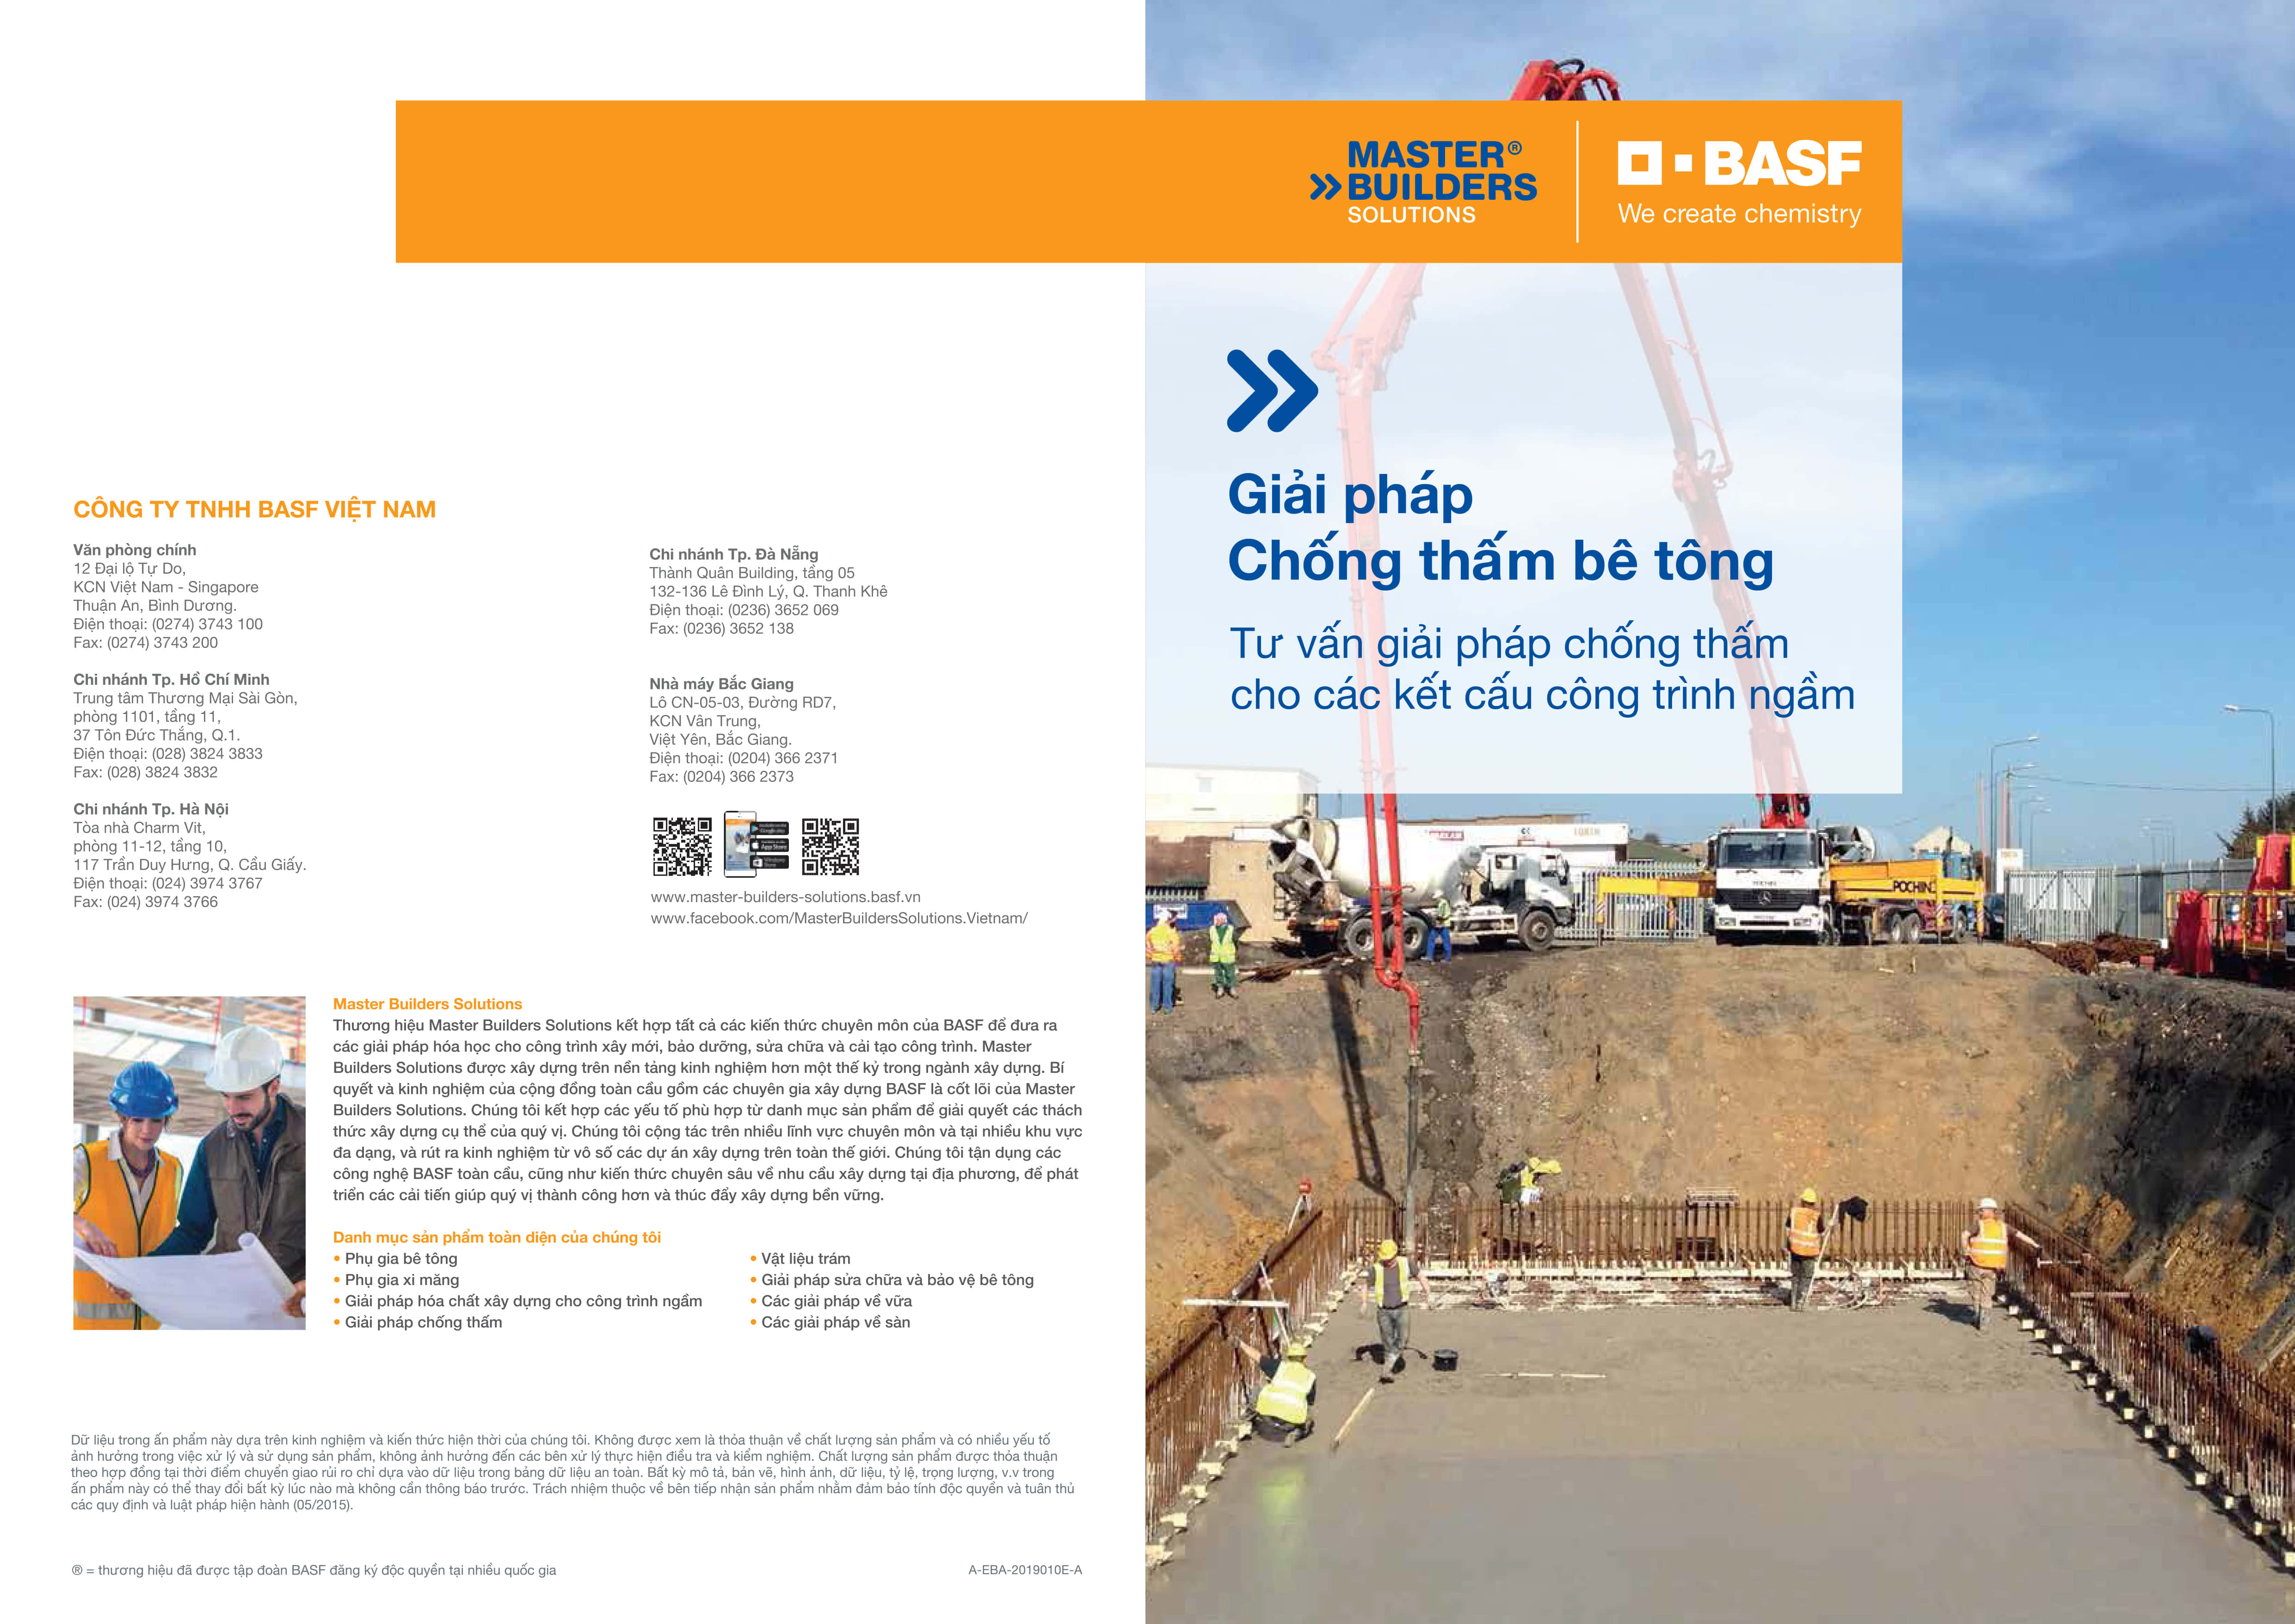 Giải pháp chống thấm cho bê tông - Giải pháp chống thấm cho công trình ngầm của BASF